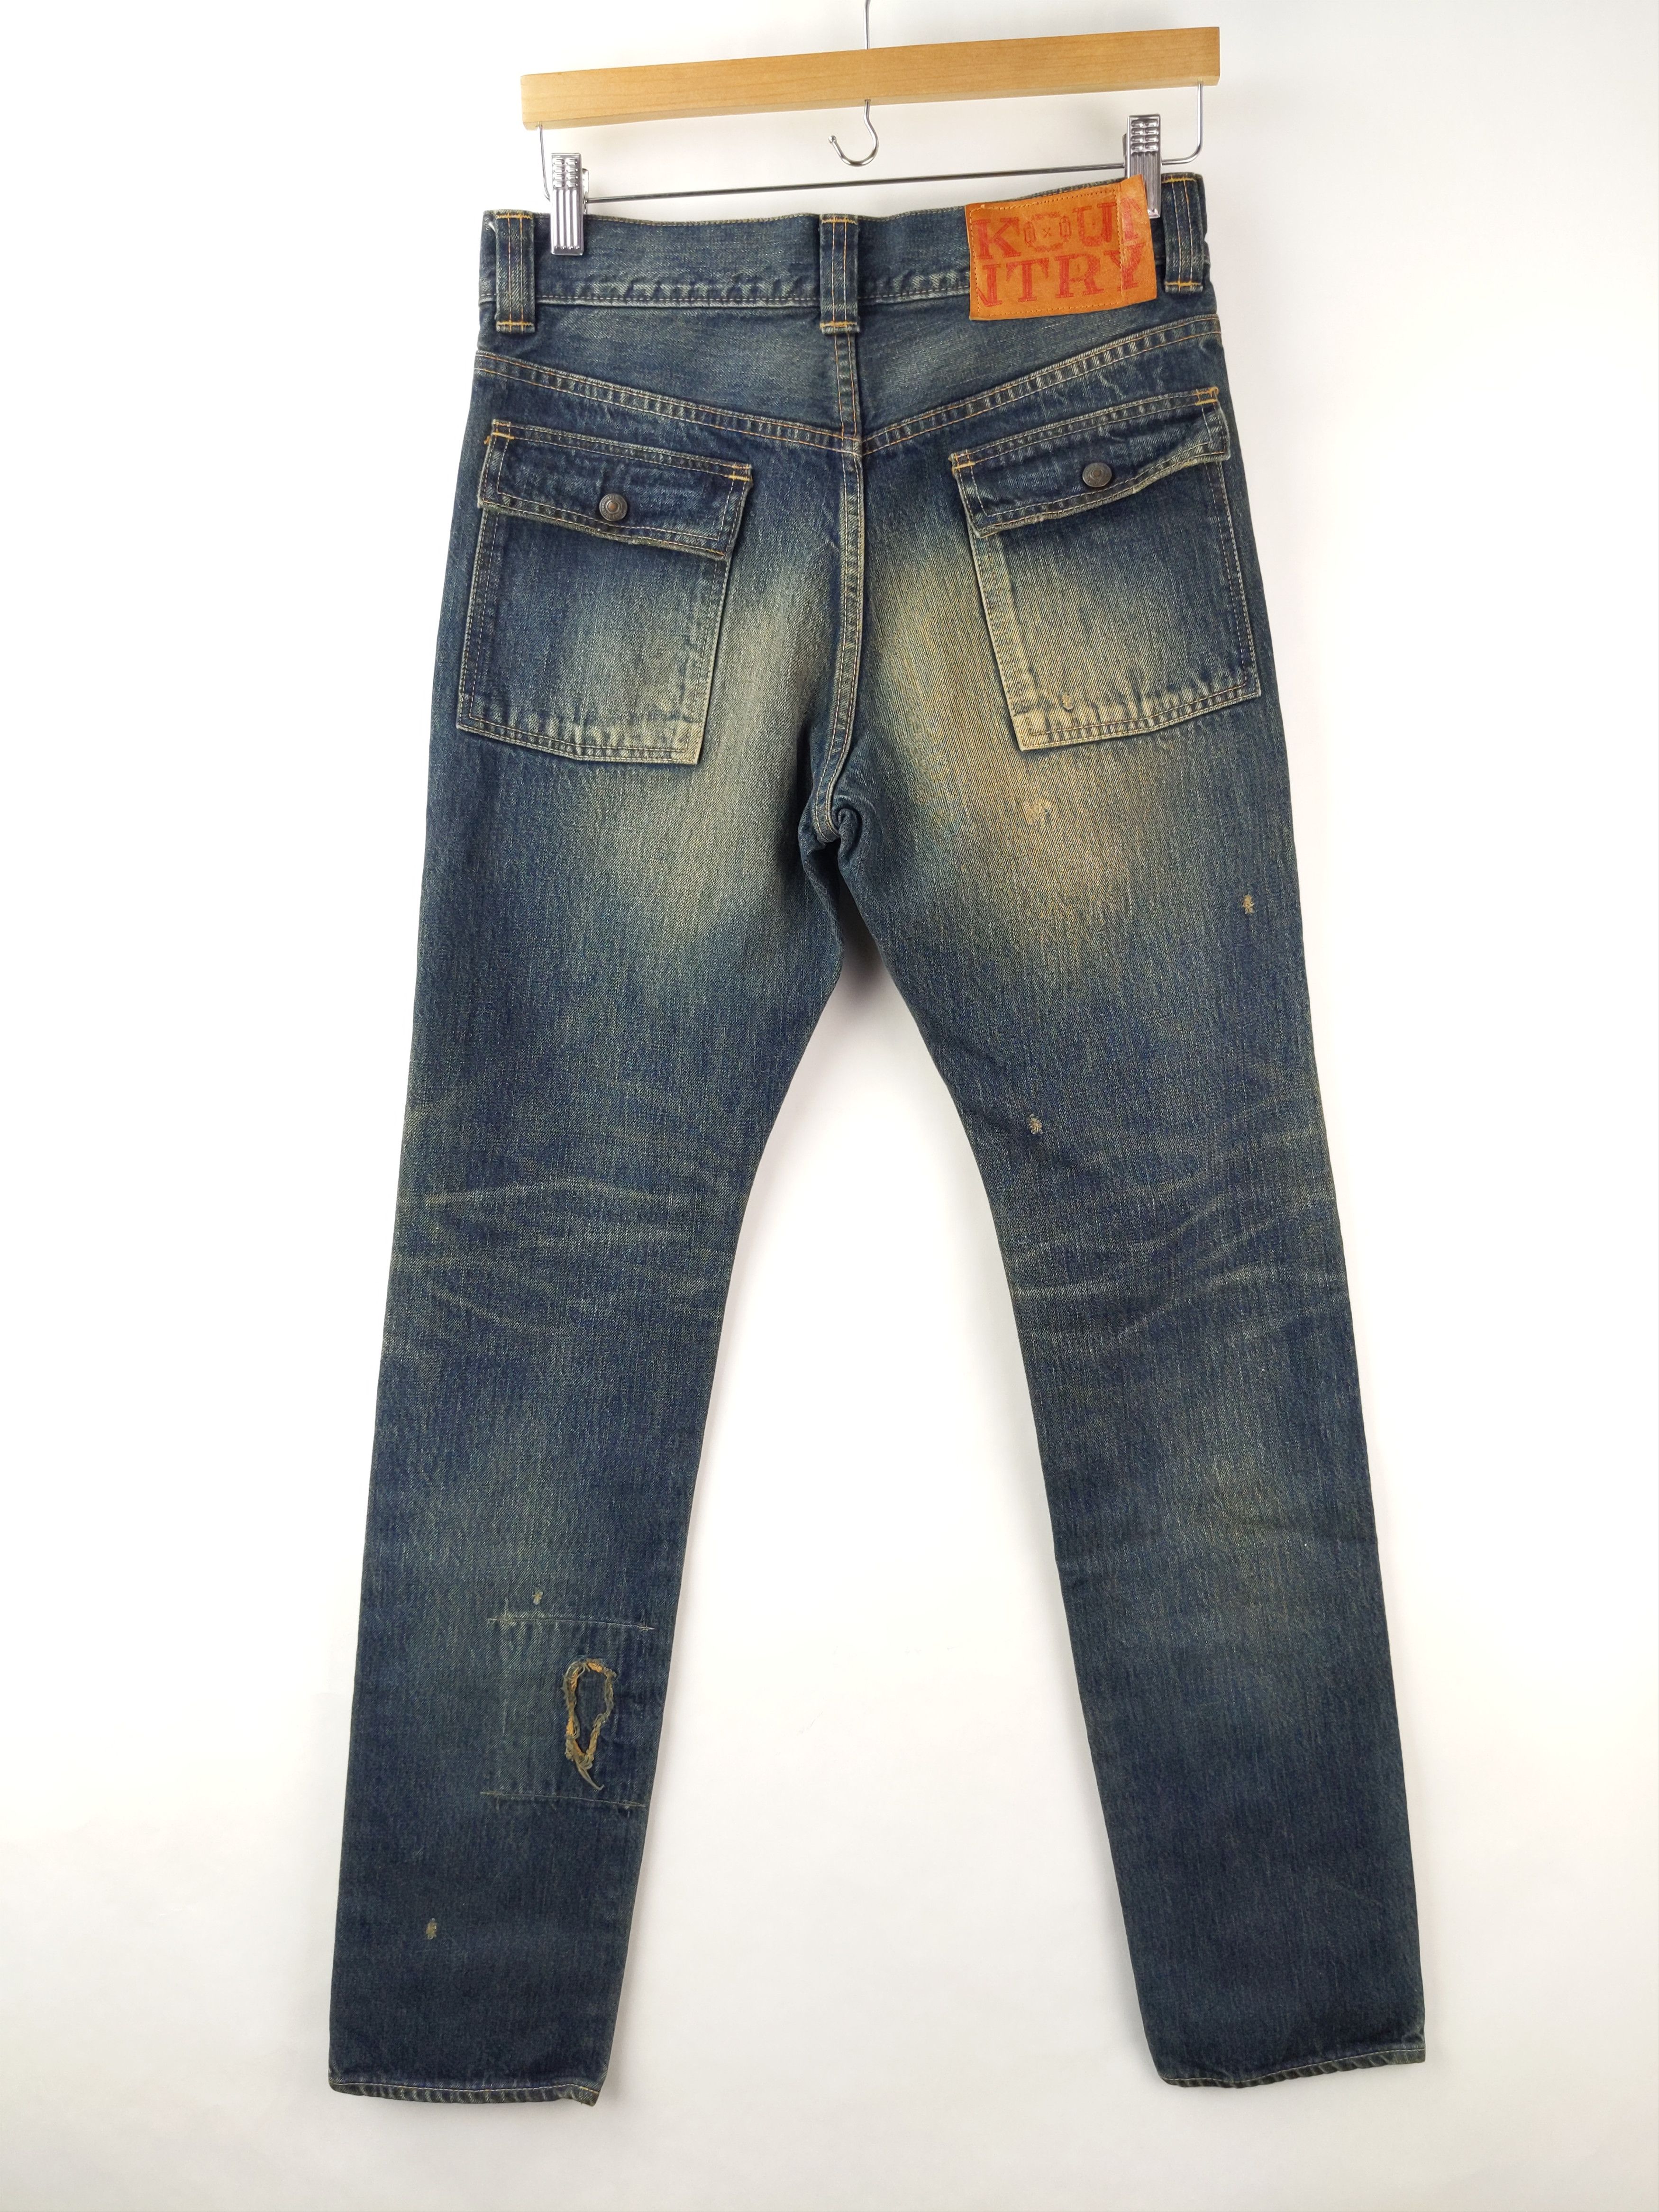 Kapital KAPITAL KOUNTRY Sashiko Boro Bush Pants Jeans Denim US S Size US 29 - 7 Thumbnail